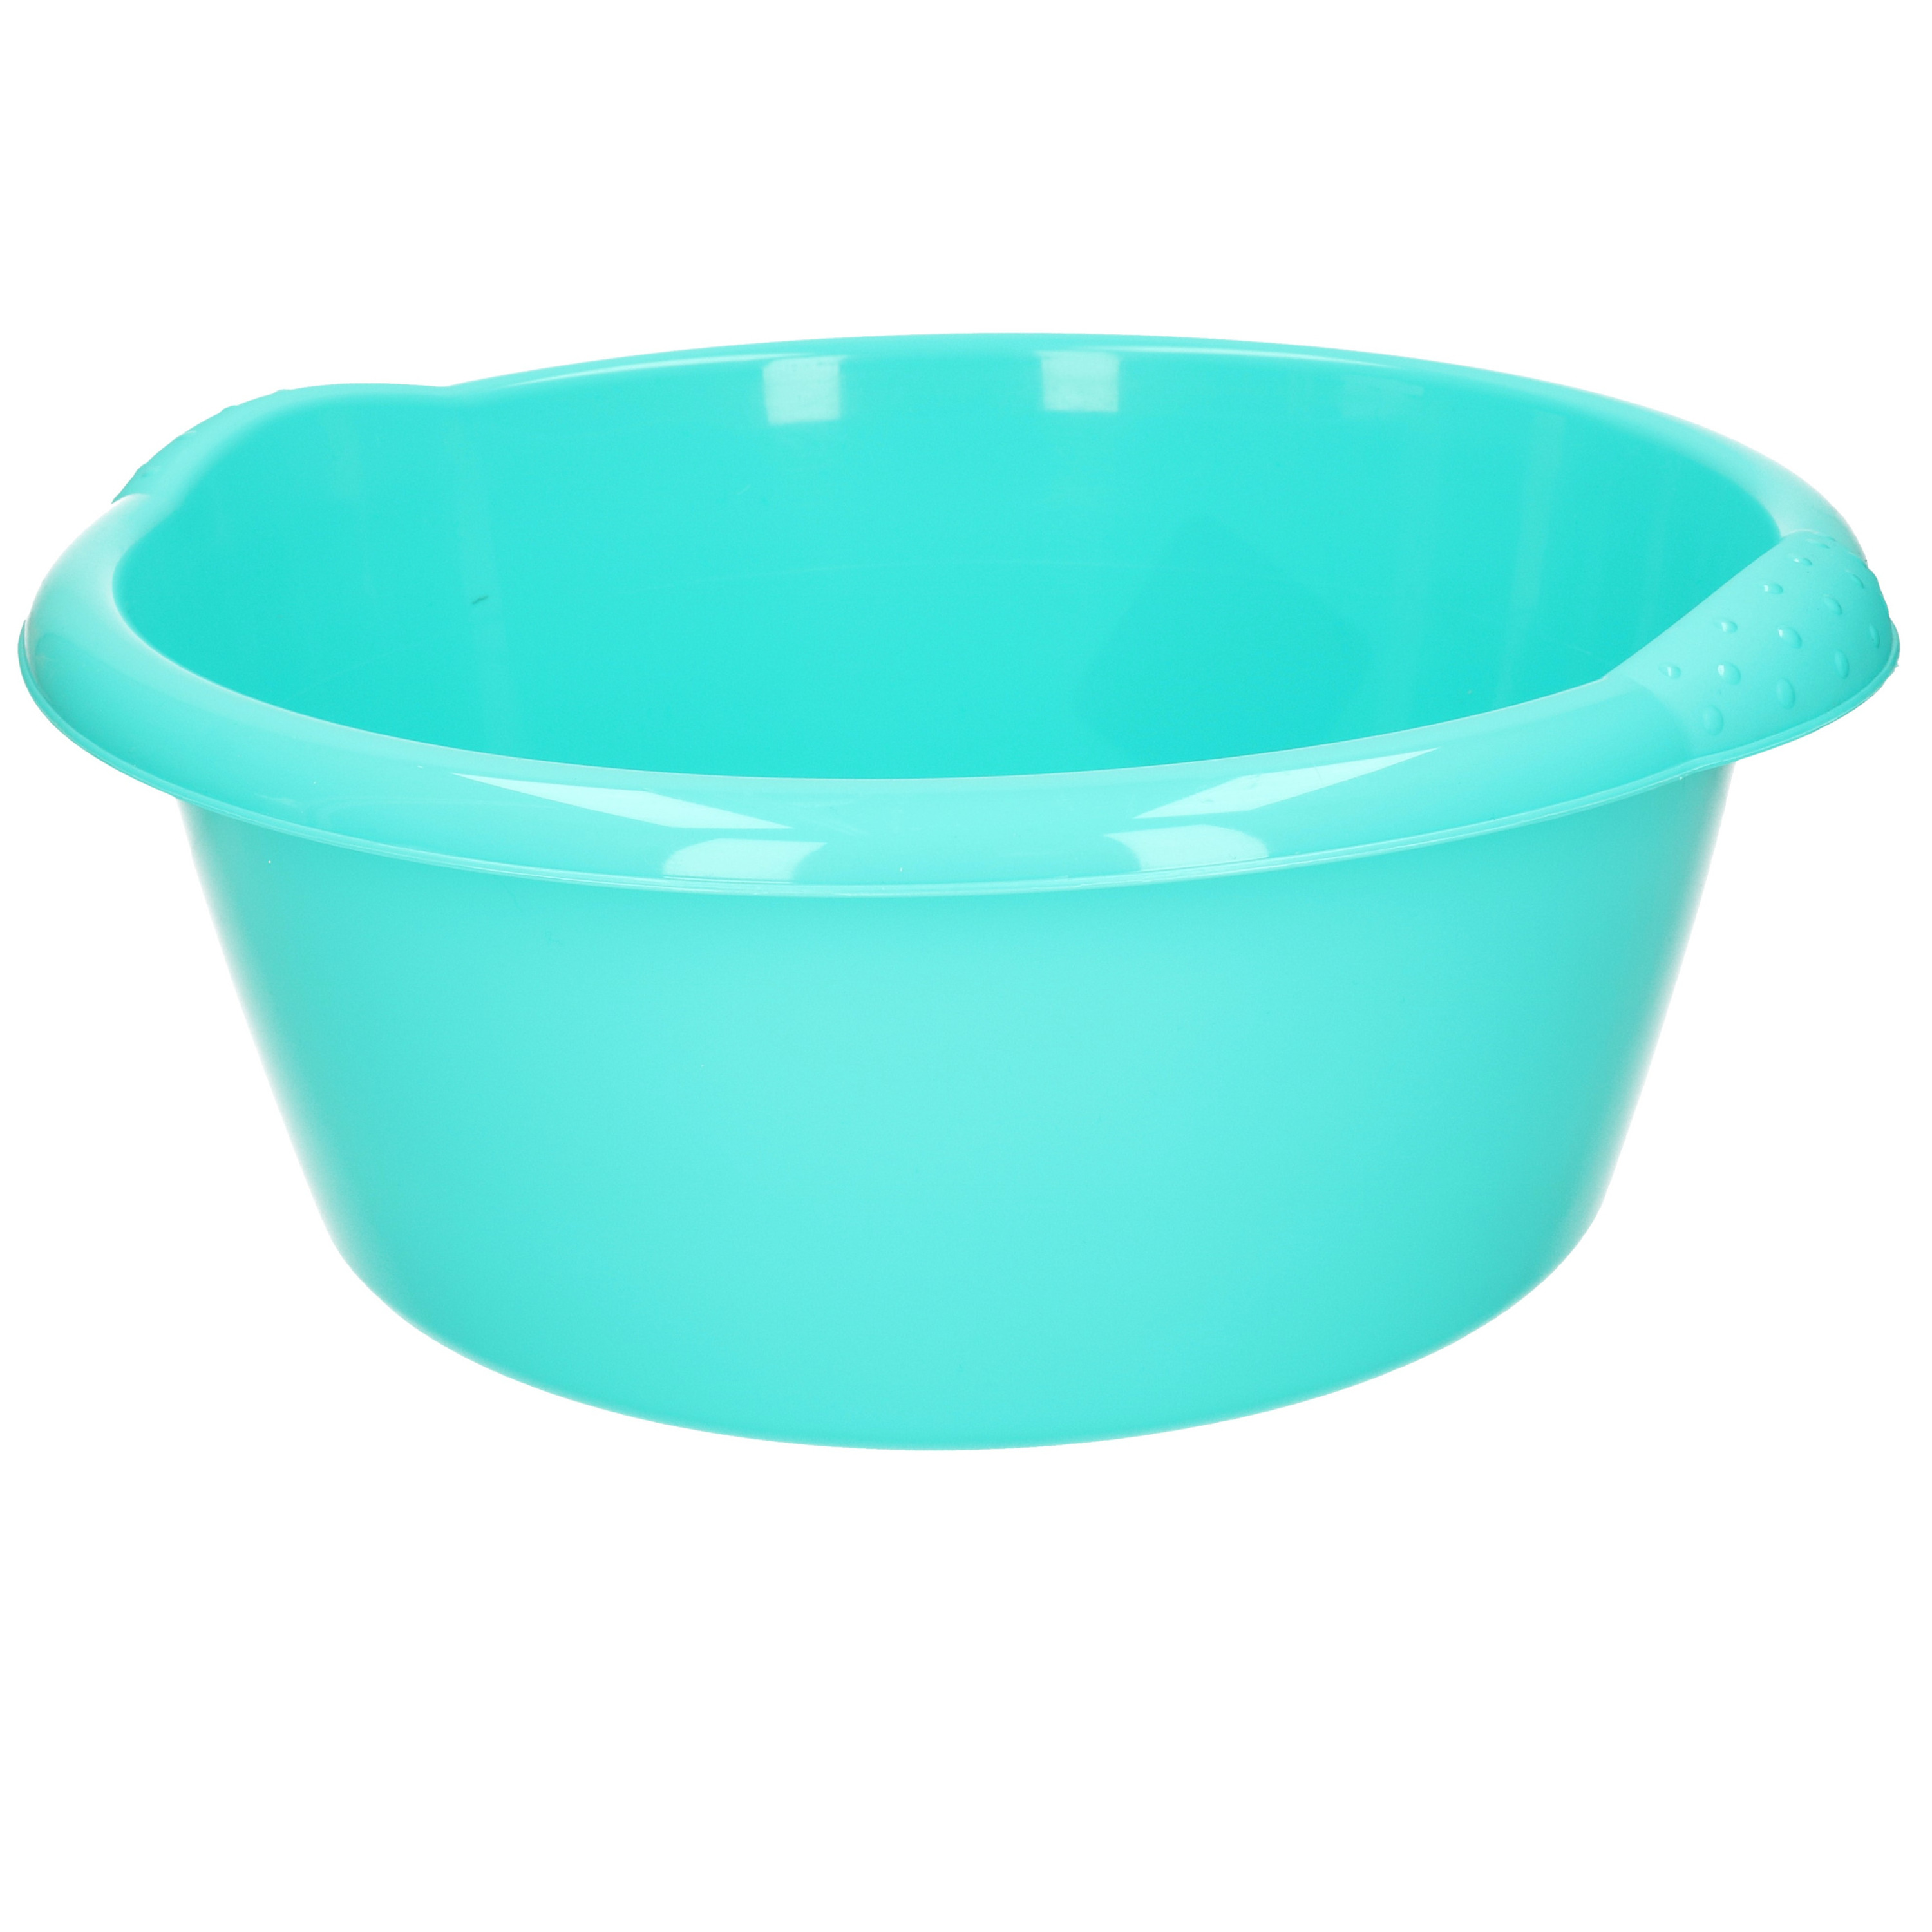 Ronde afwasteil/afwasbak turquoise blauw 10 liter 38 x 16 cm -